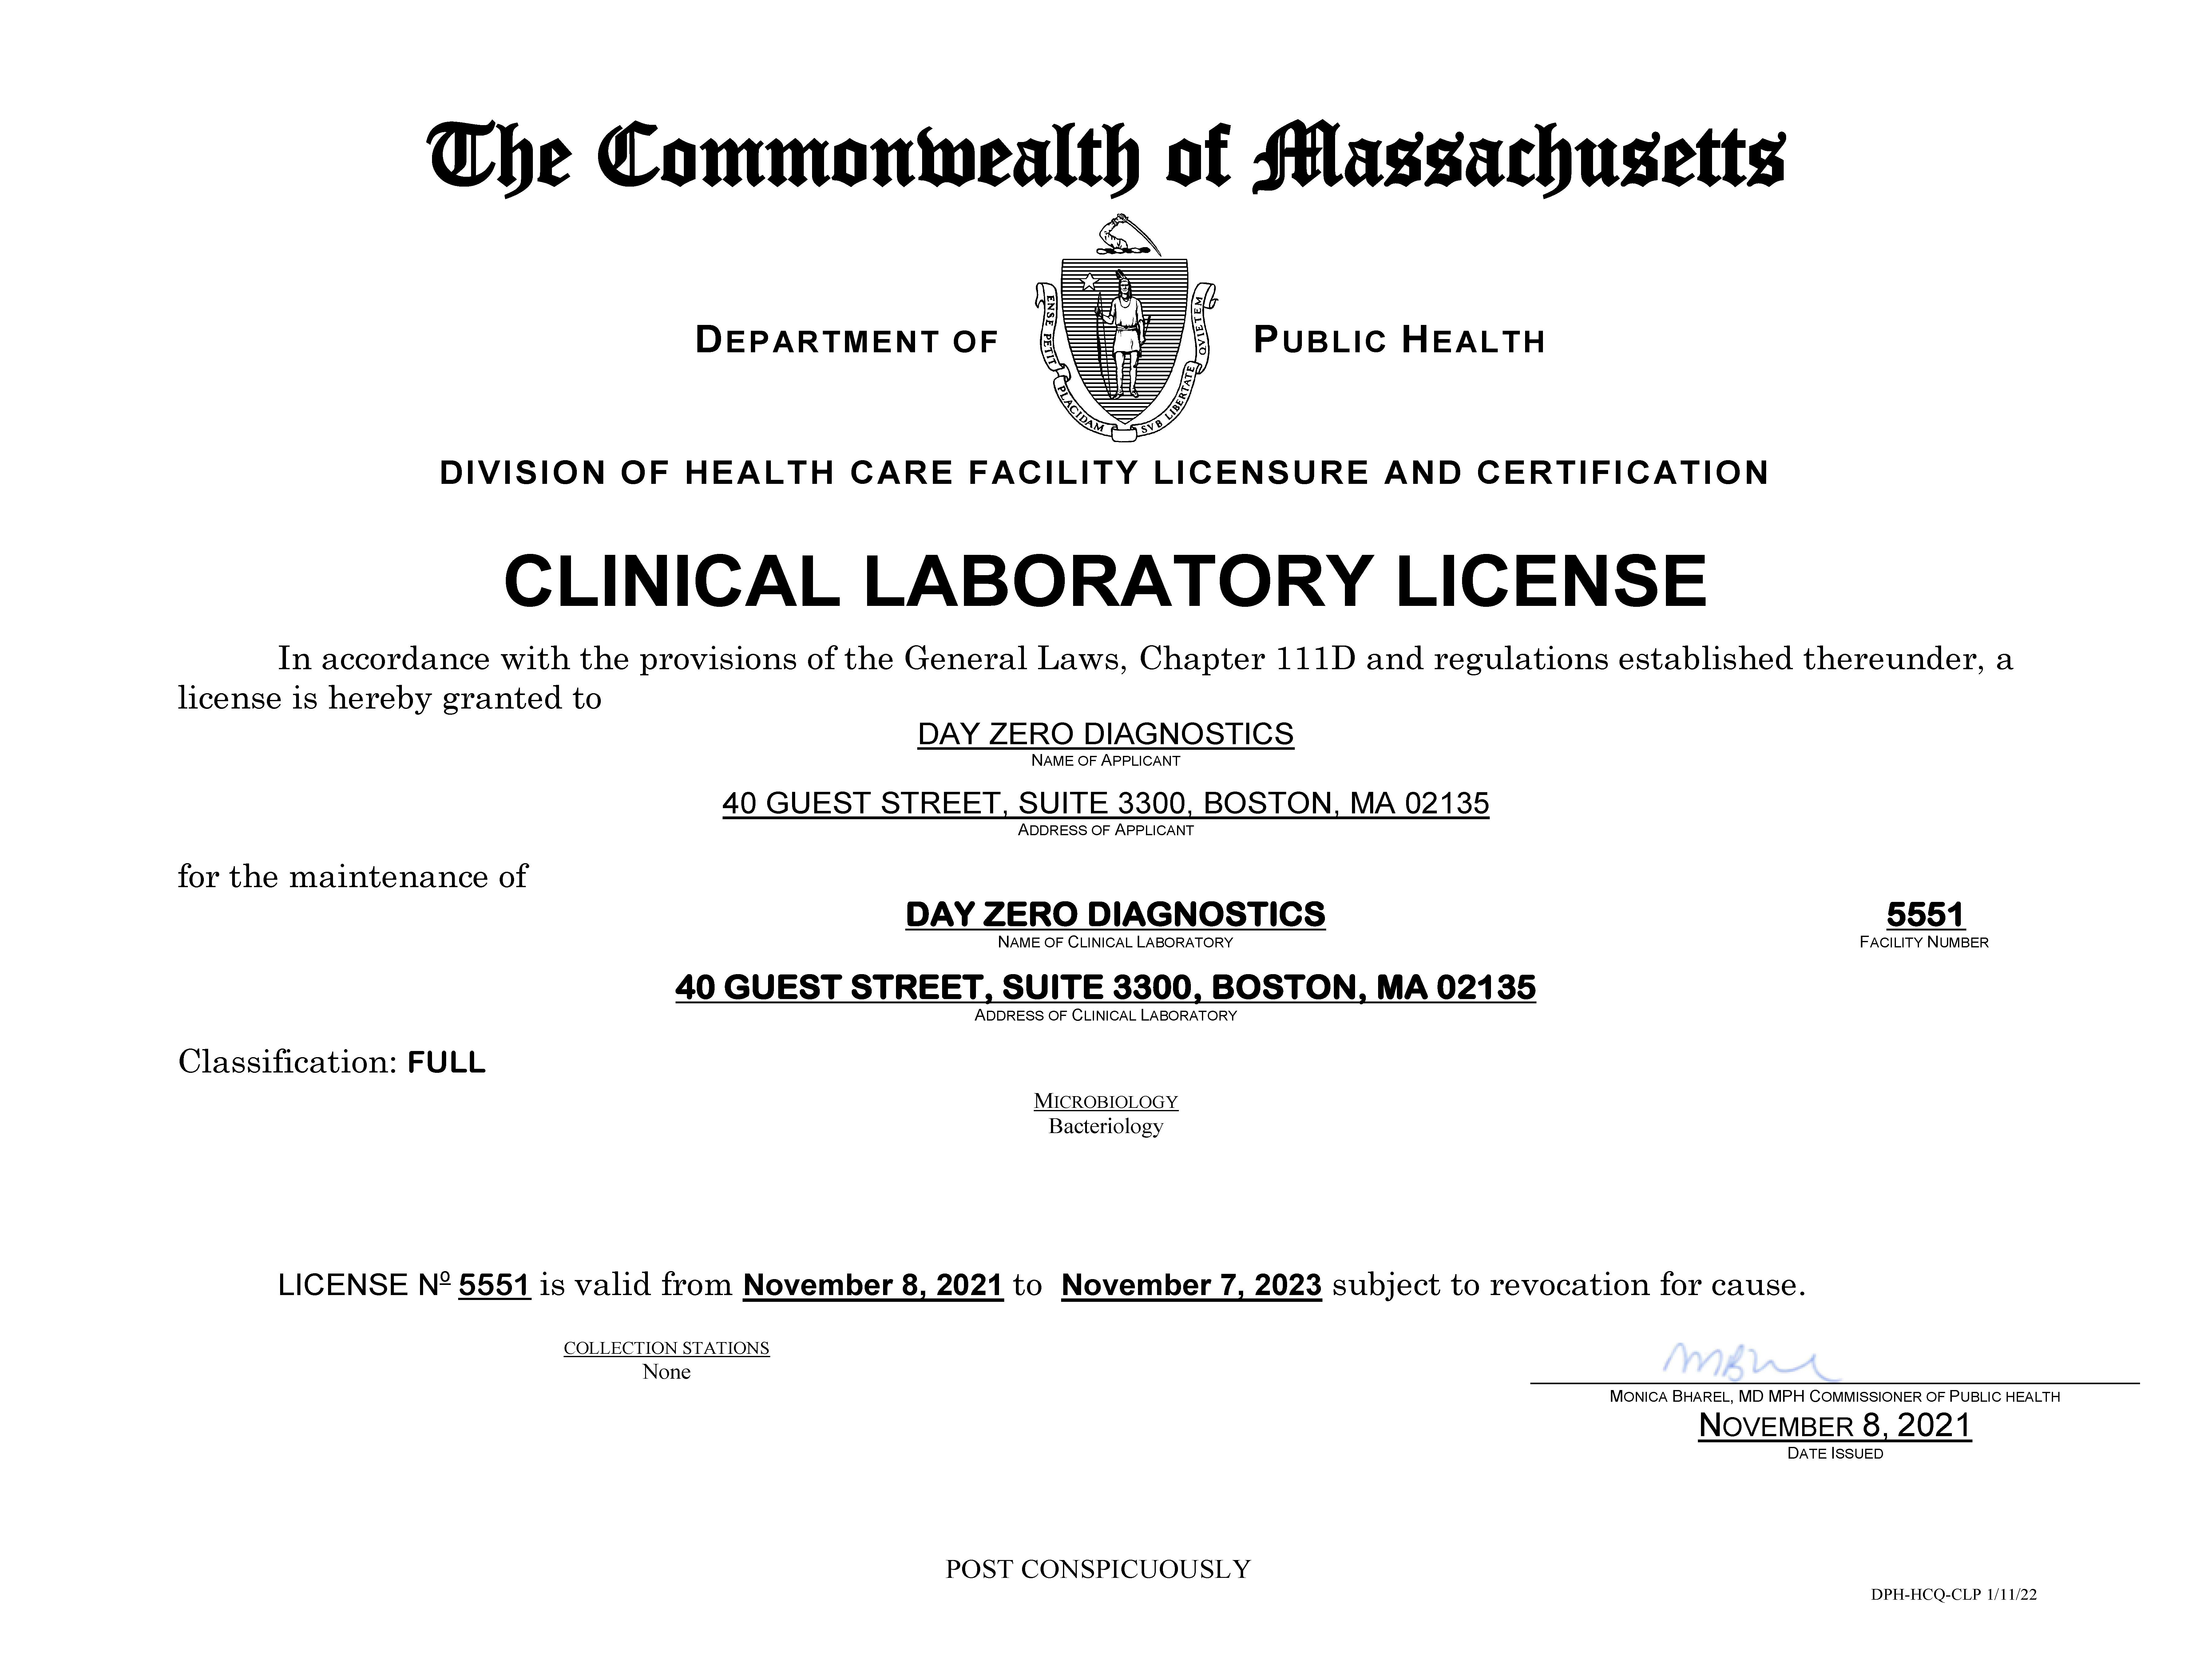 Day Zero Diagnostics Clinical Laboratory License